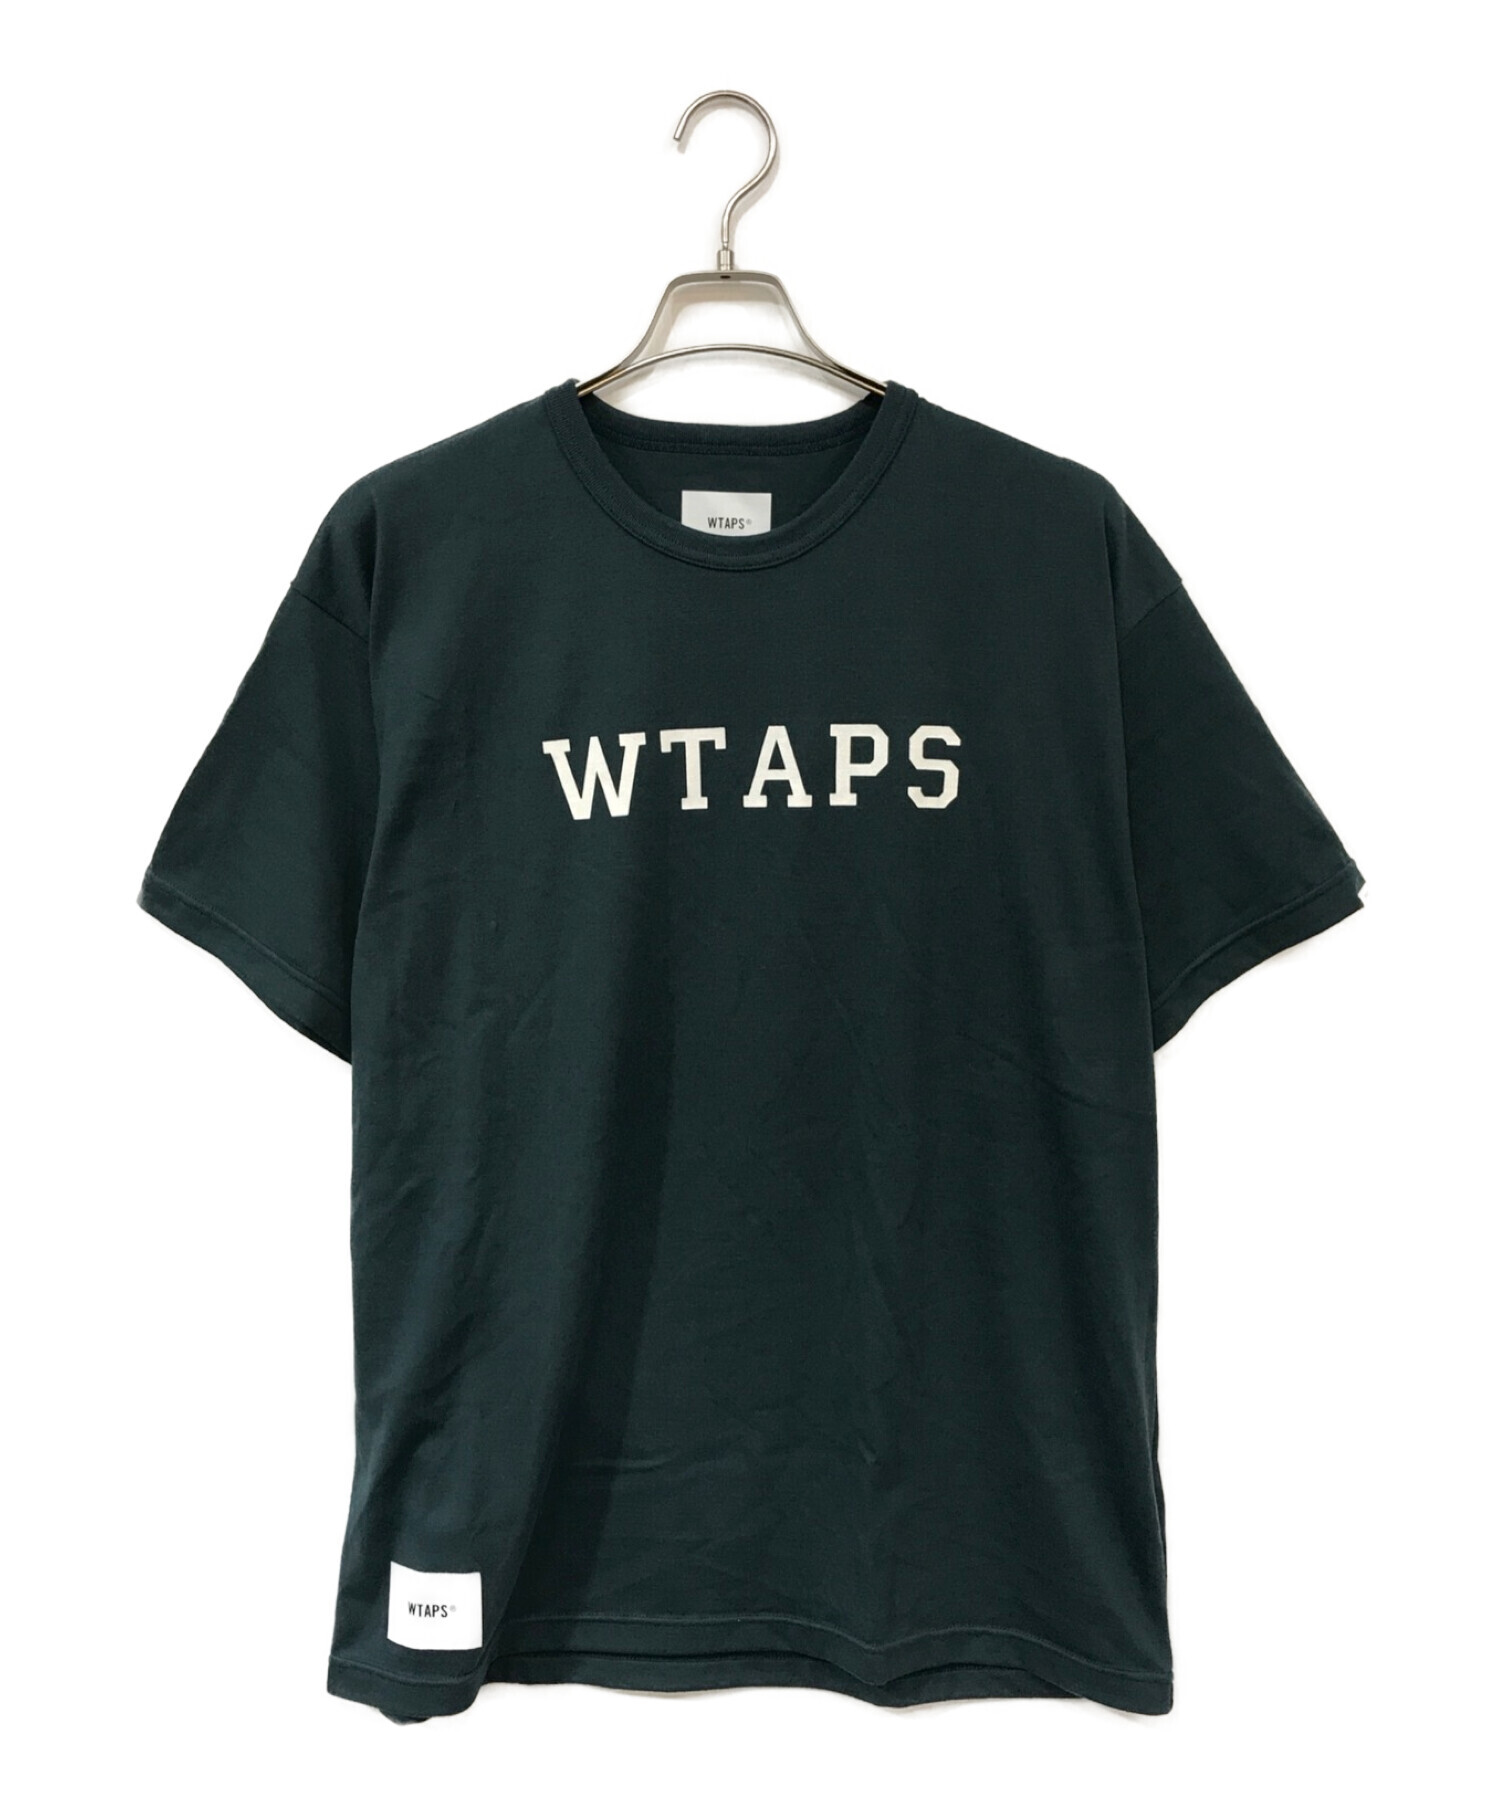 中古・古着通販】WTAPS (ダブルタップス) ロゴプリントTシャツ